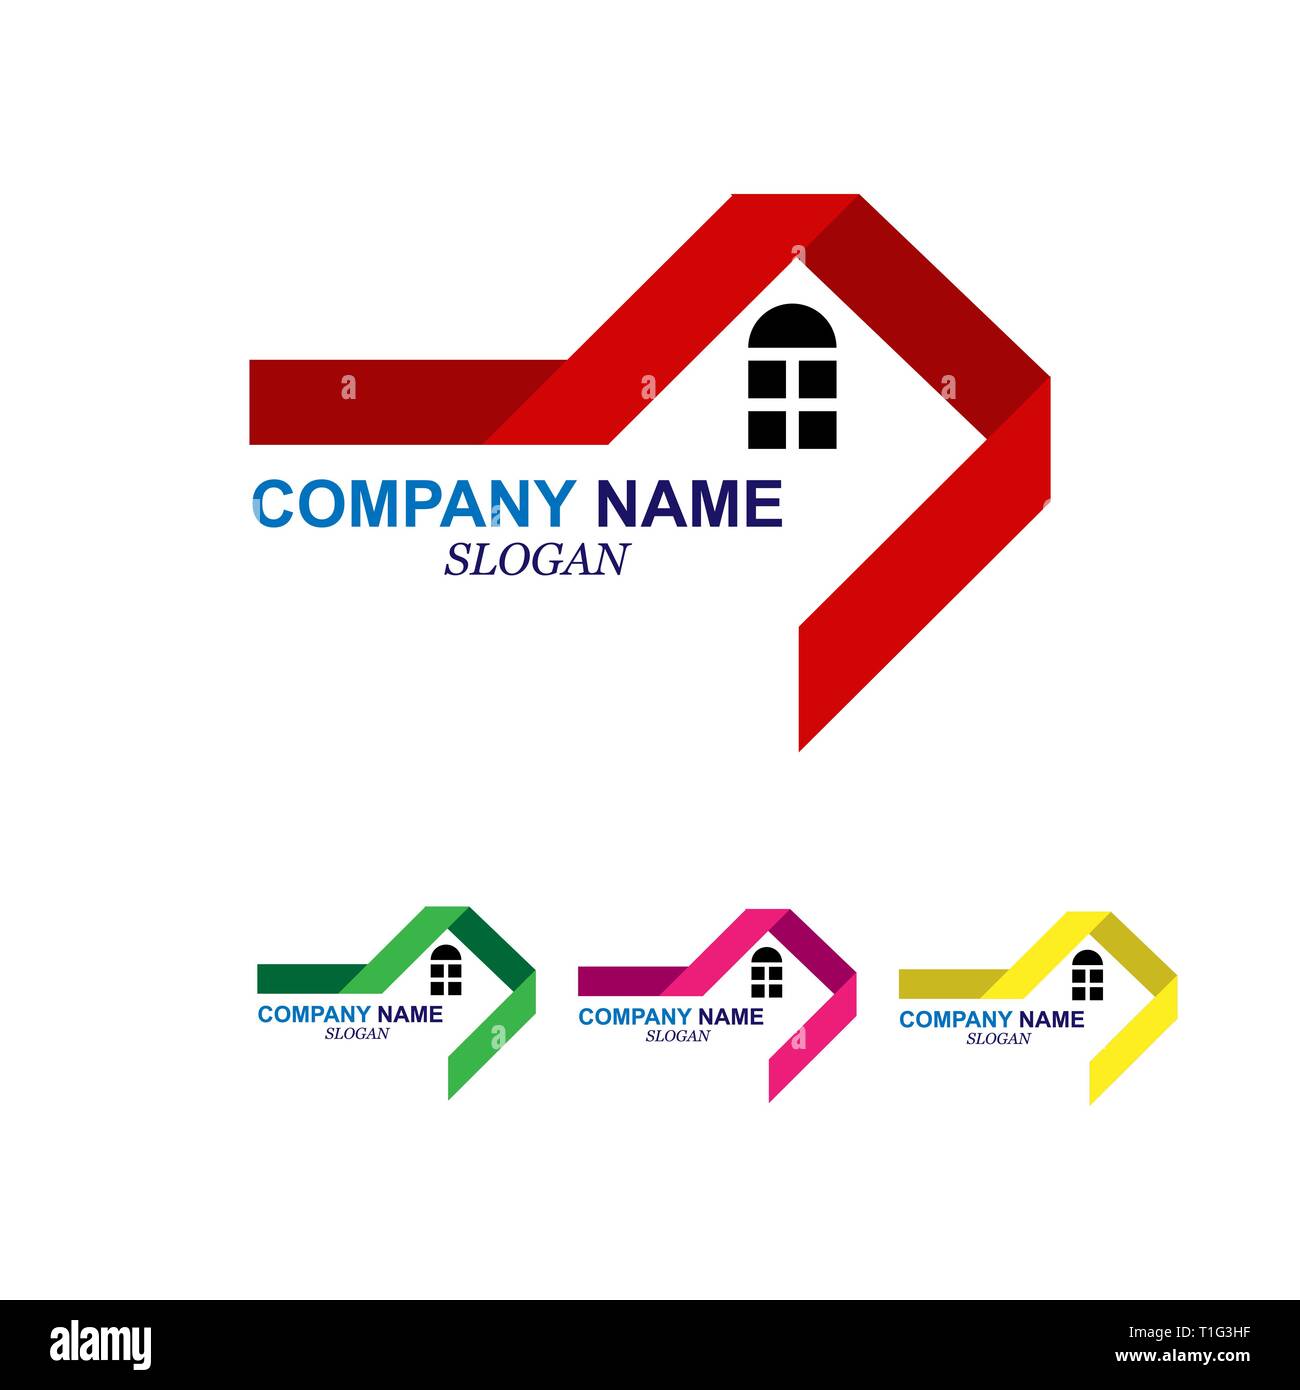 Leer Fur Das Logo Einer Baufirma Und Immobilien Unternehmen Stock Vektorgrafik Alamy